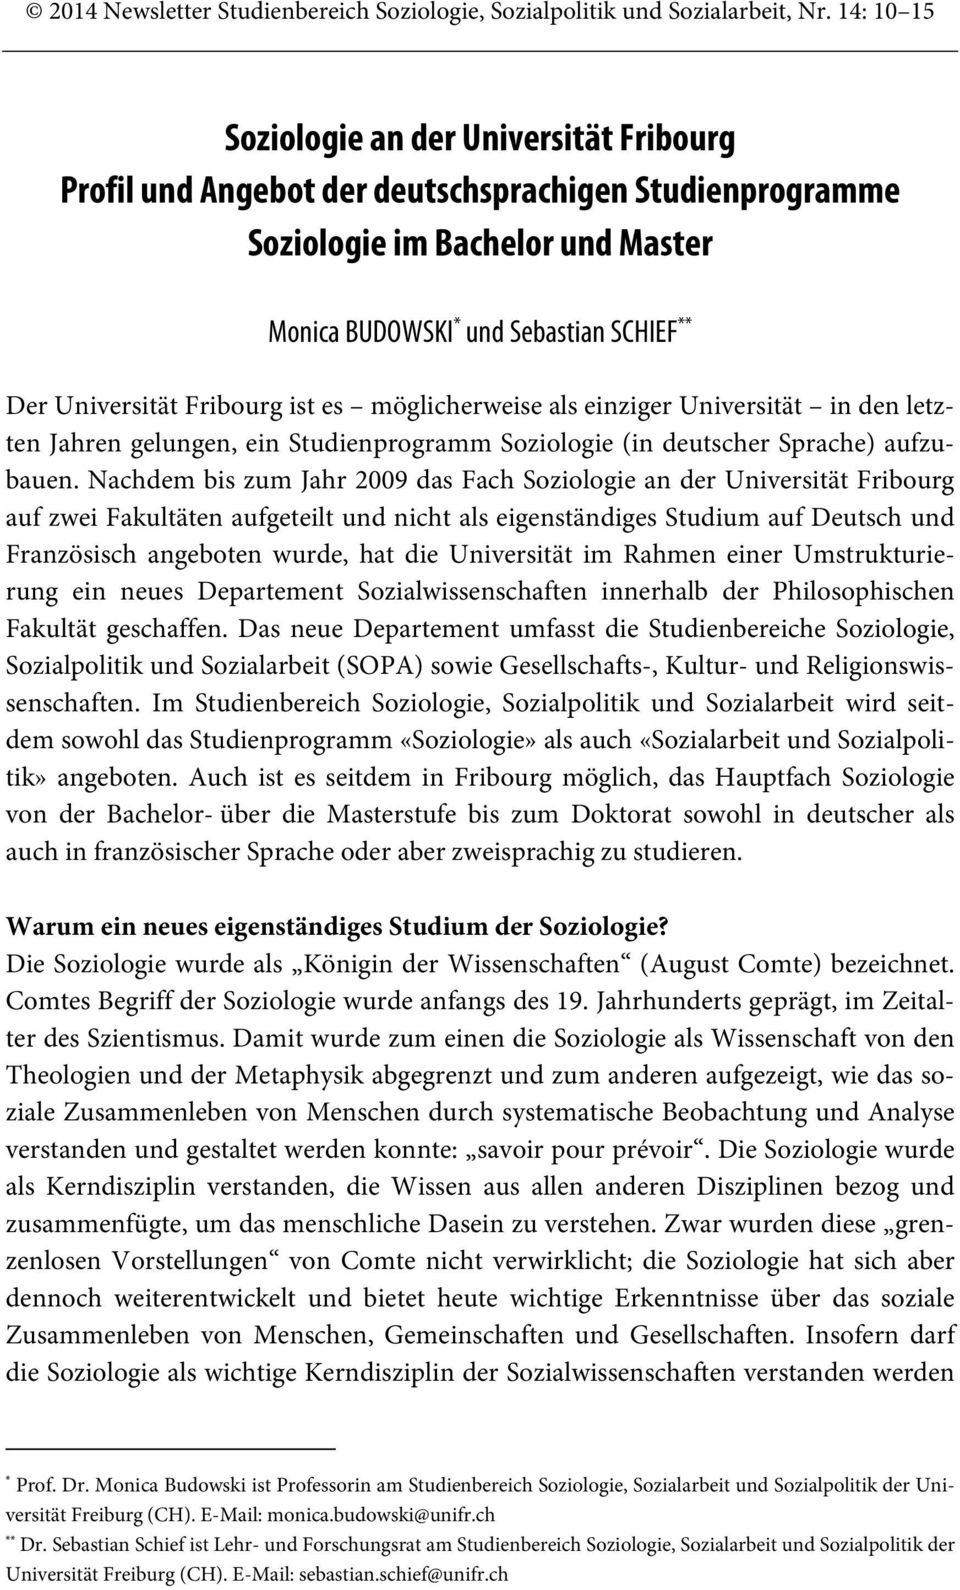 Fribourg ist es möglicherweise als einziger Universität in den letzten Jahren gelungen, ein Studienprogramm Soziologie (in deutscher Sprache) aufzubauen.